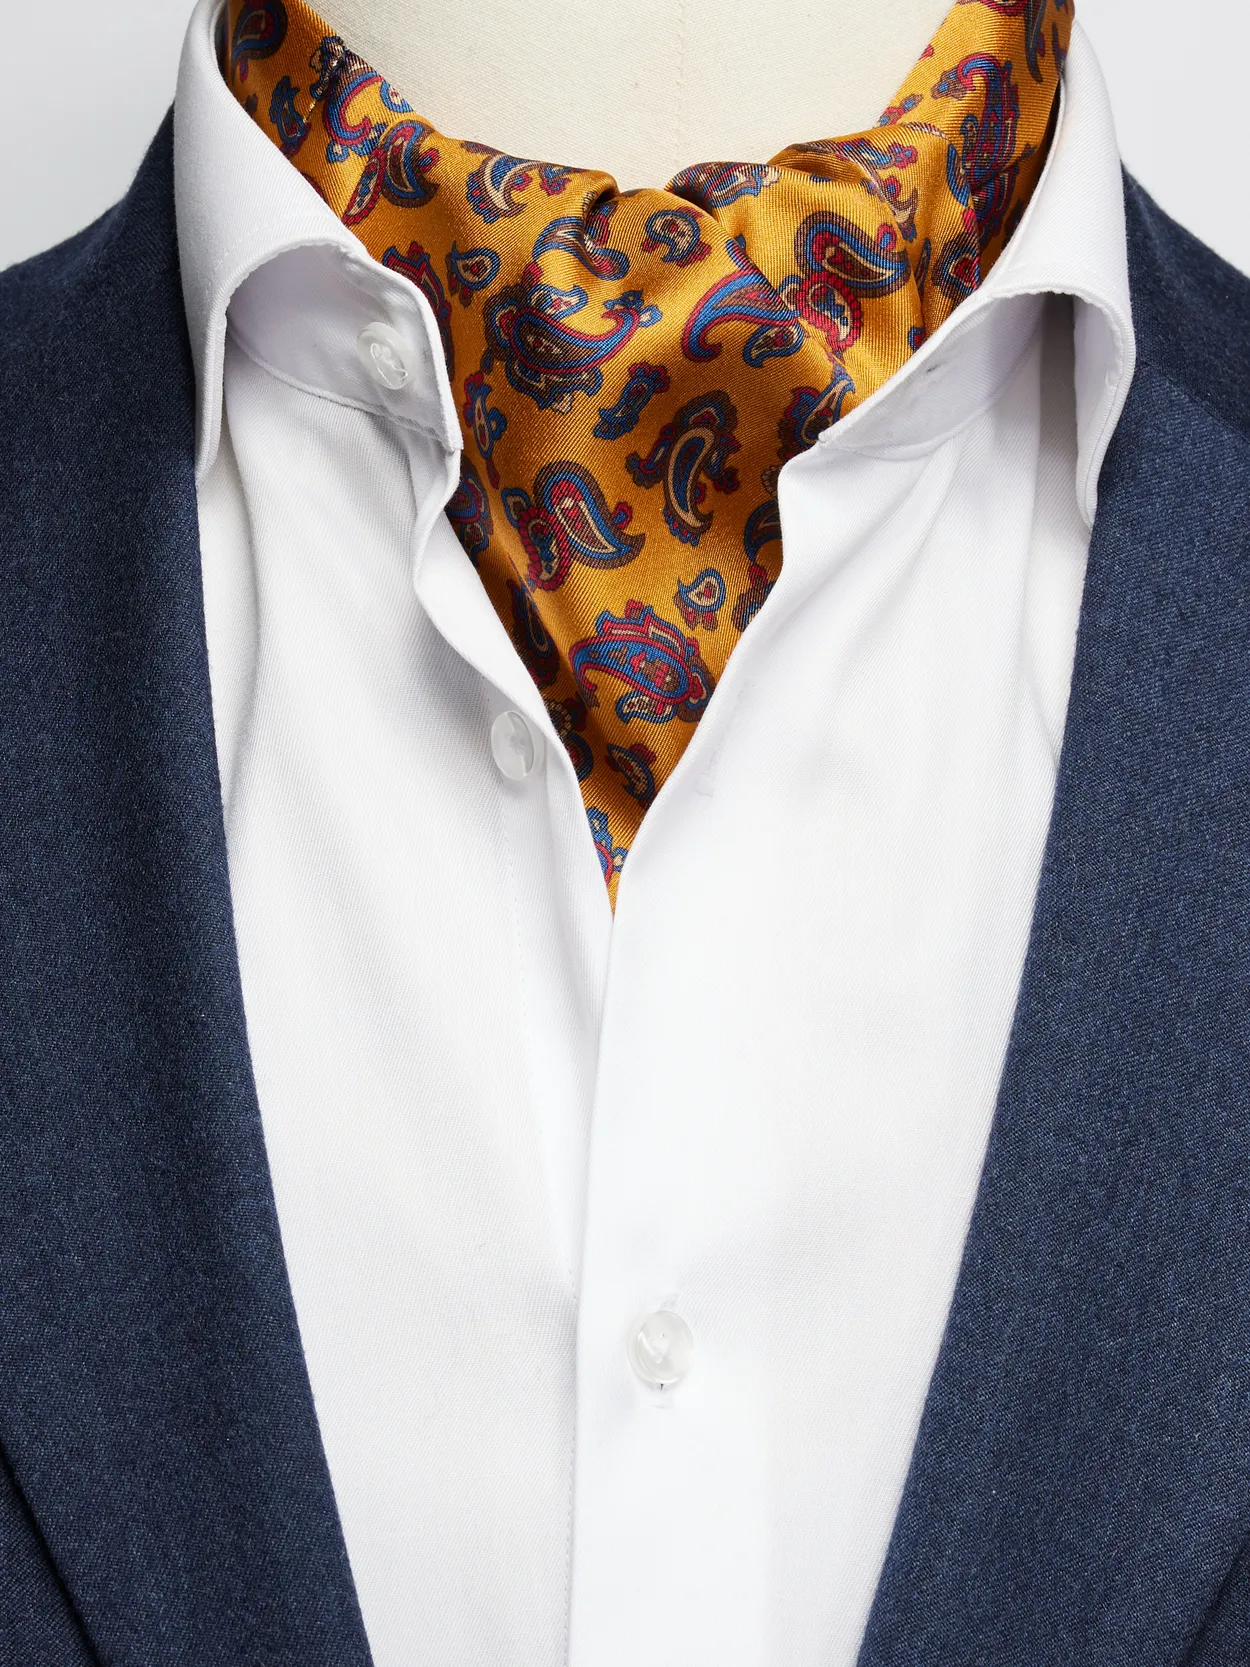 Men's Ascot Ties & Cravats - Buy Online | John Henric